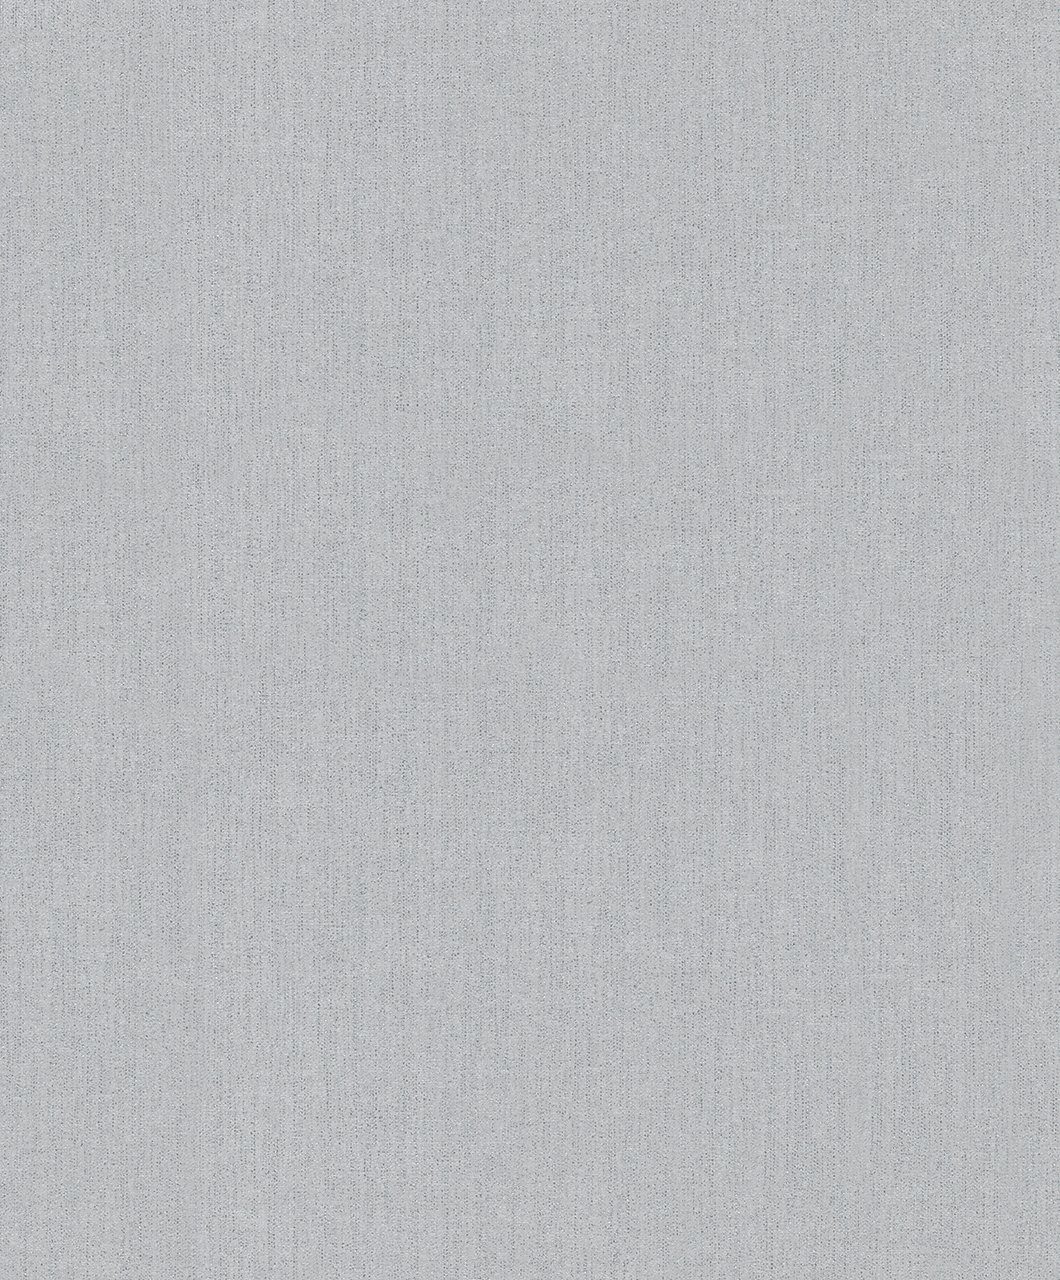 SCHÖNER WOHNEN-Kollektion Vliestapete Tessile, 0,53 x 10,05 Meter grau/silber